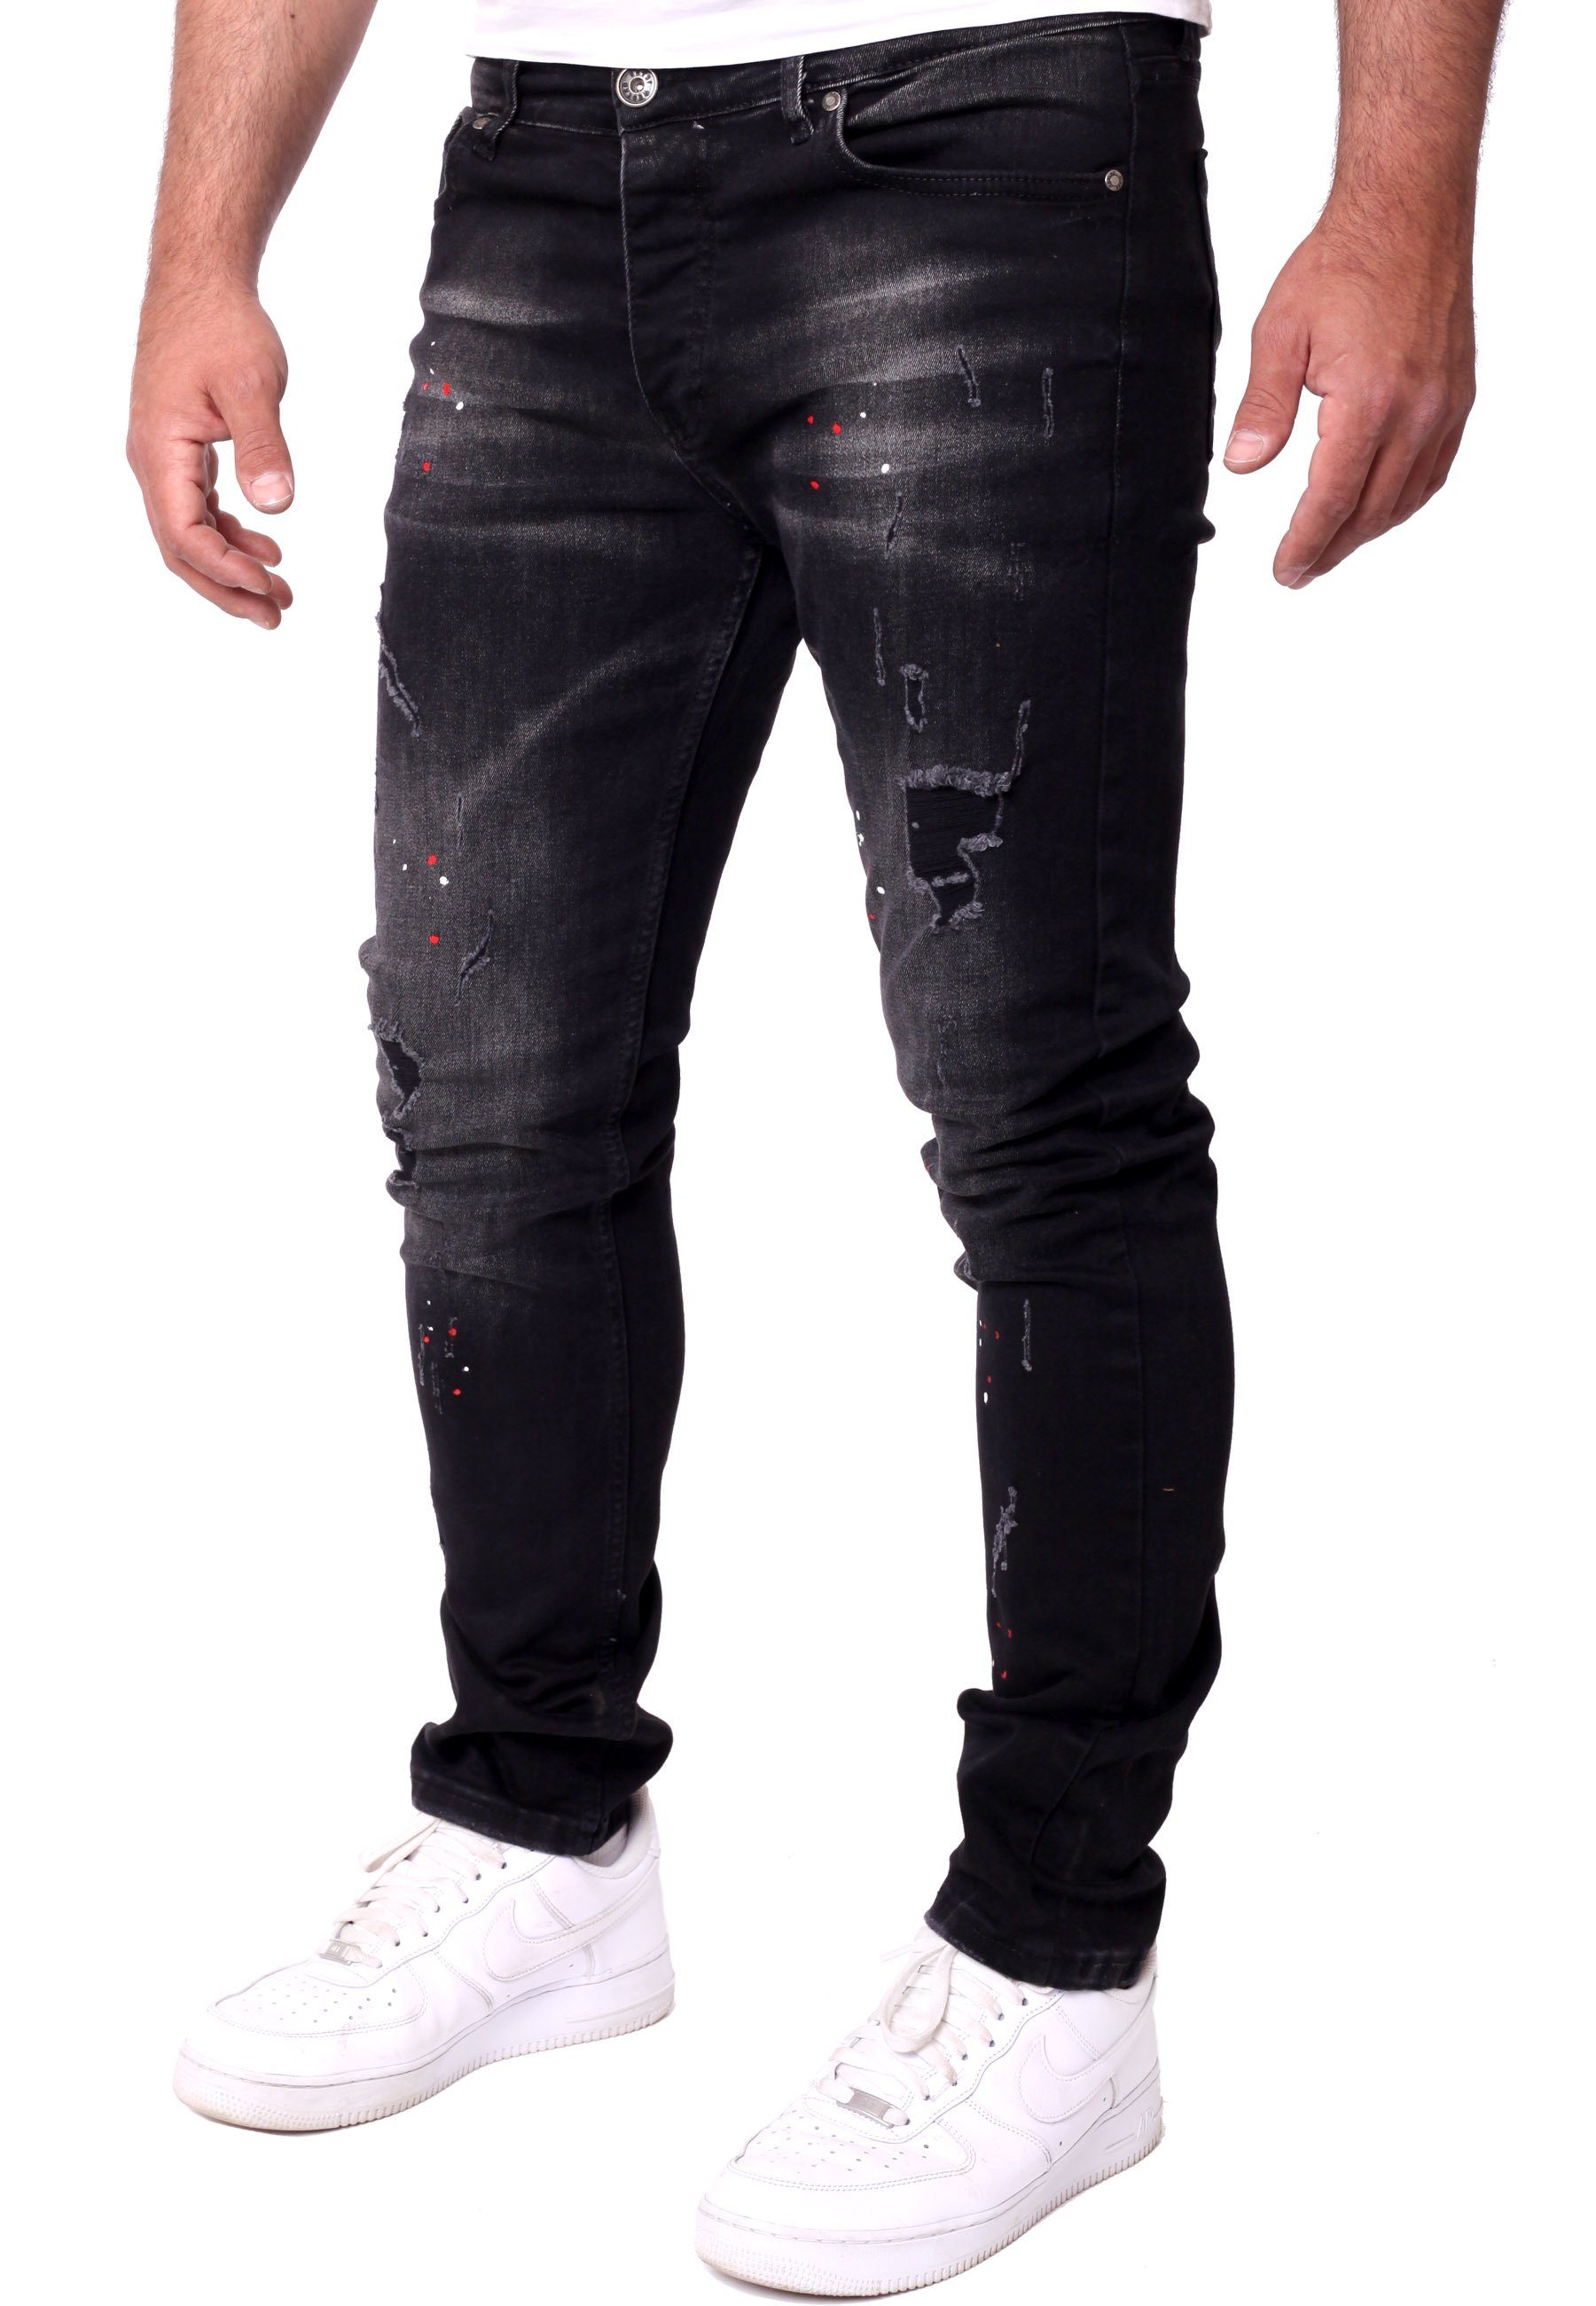 Männer-Hose Jeanshose Denim schwarz Stretch Destroyed Destroyed Reslad Destroyed-Jeans Slim Jeans Jeanshose Reslad Color-Splashes Herren Fit